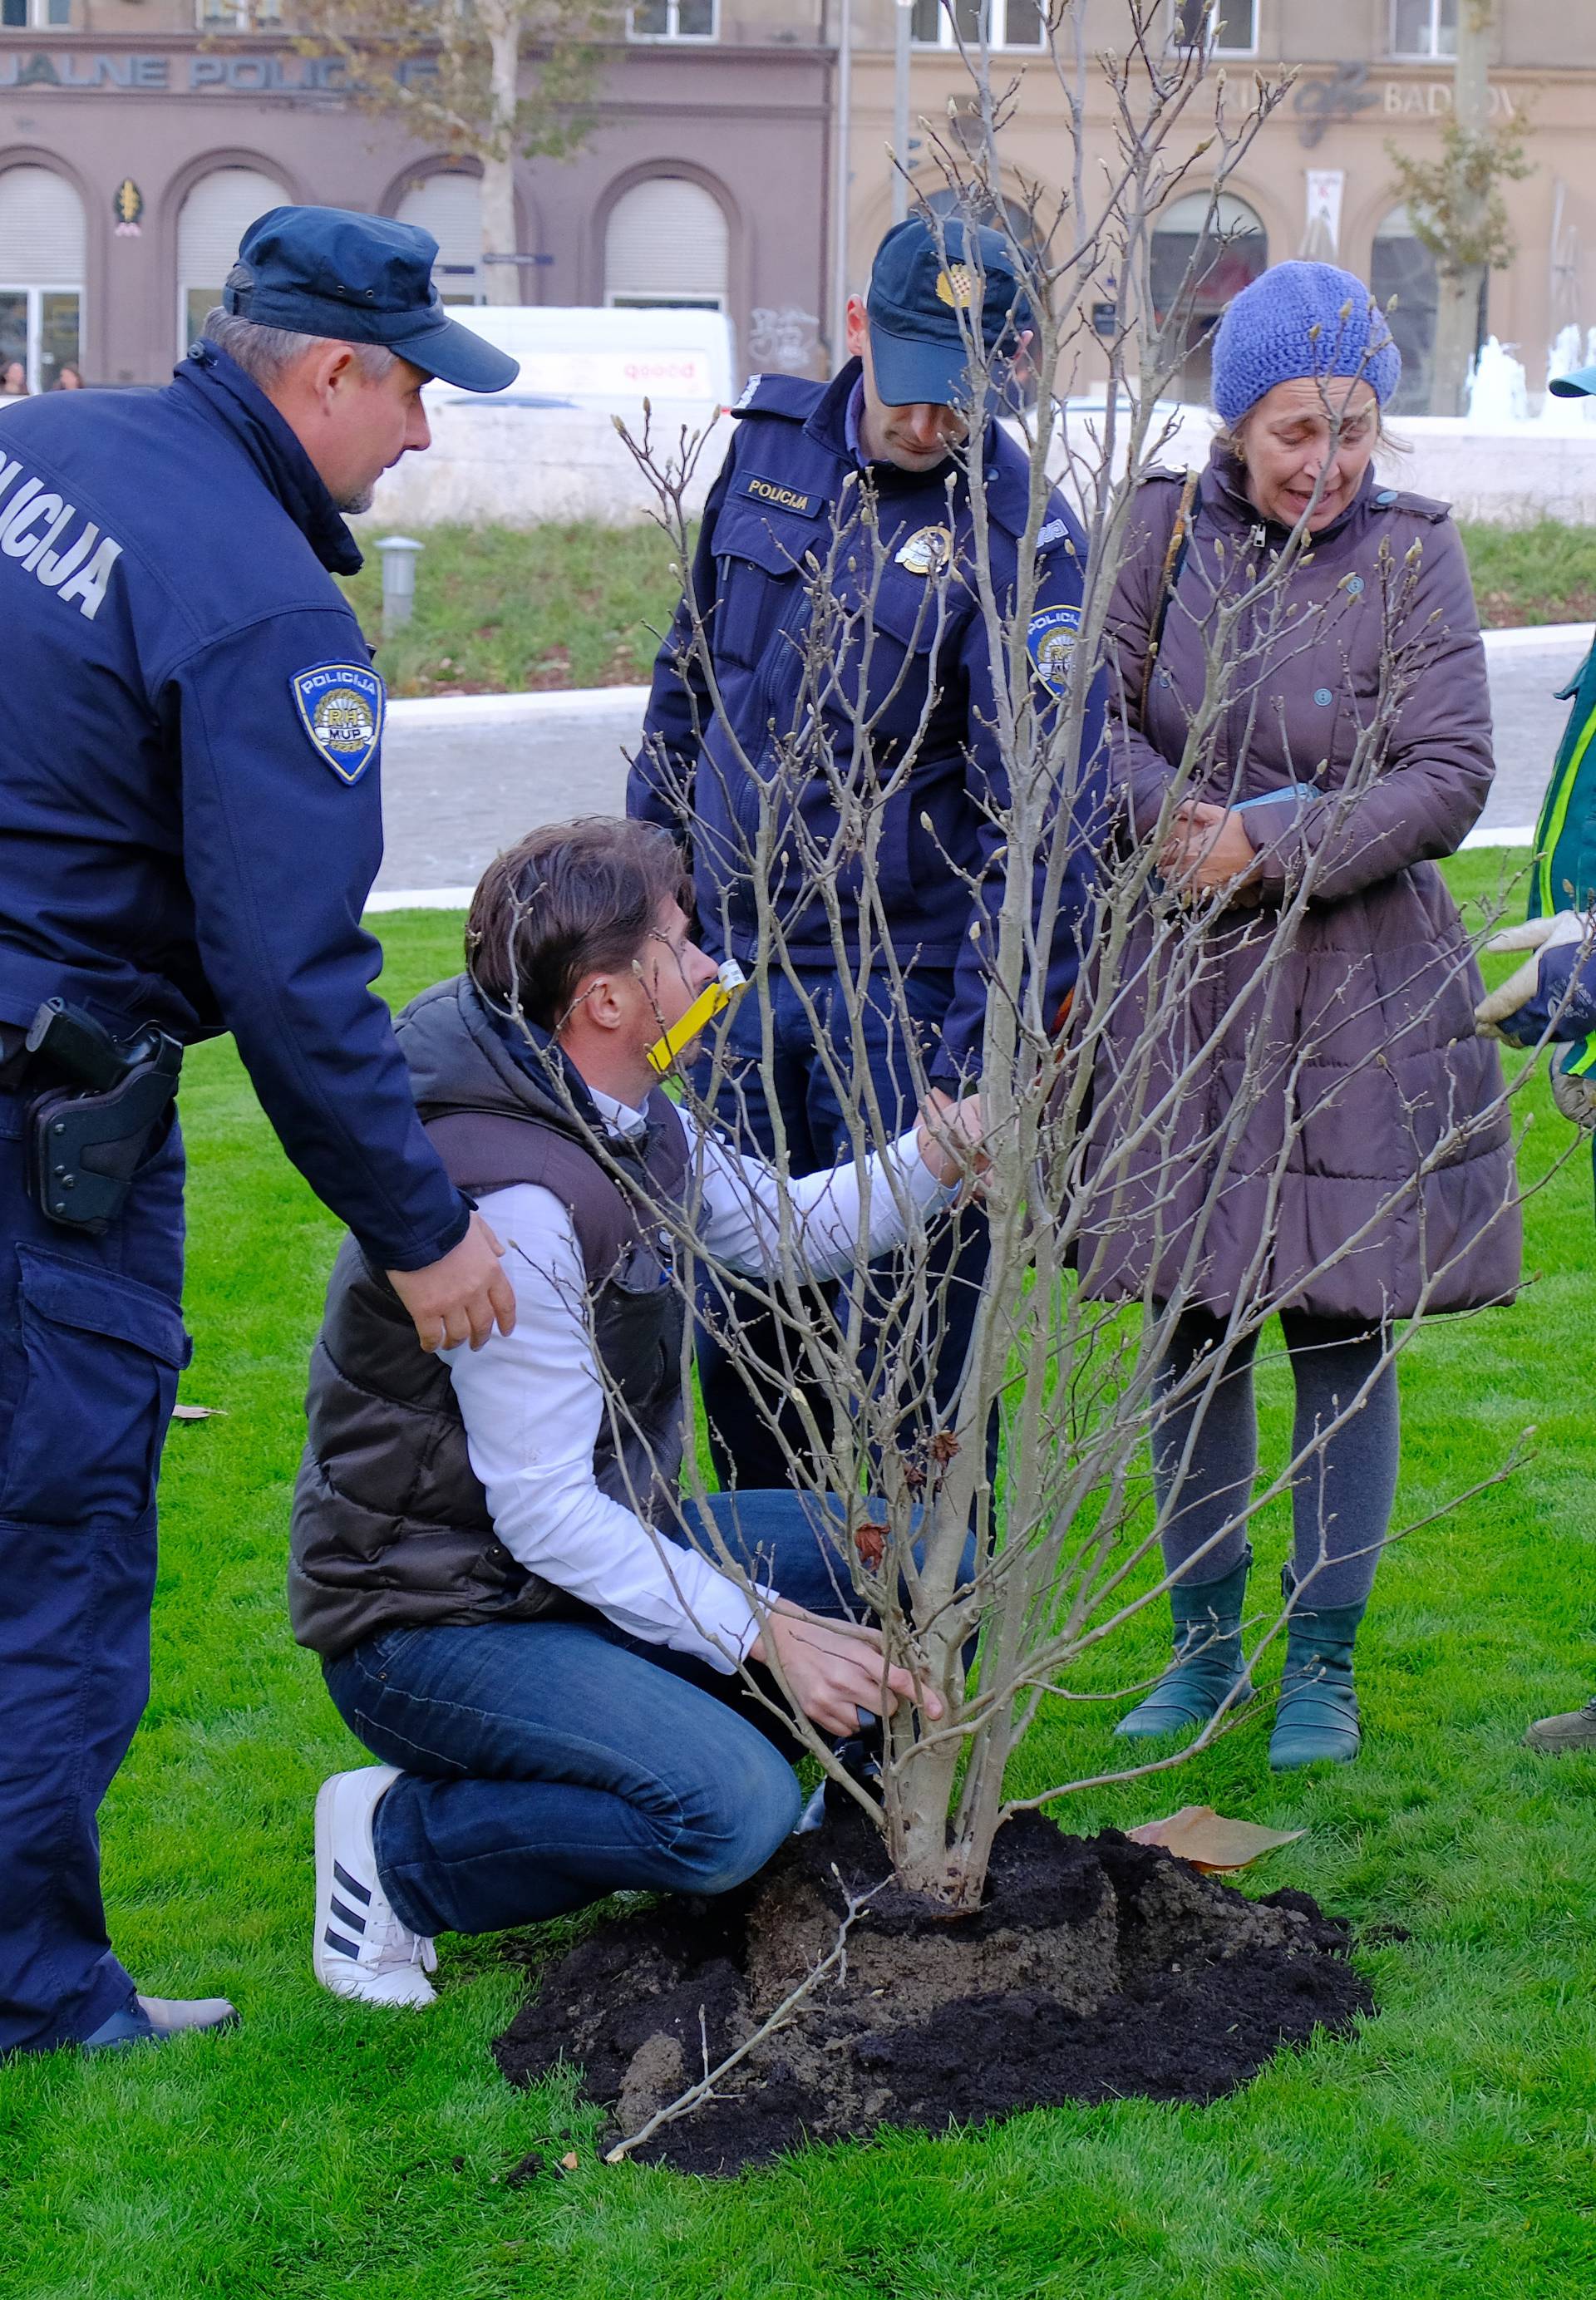 Došla policija i legitimirala ih: 'Sadili smo magnolije iz inata'